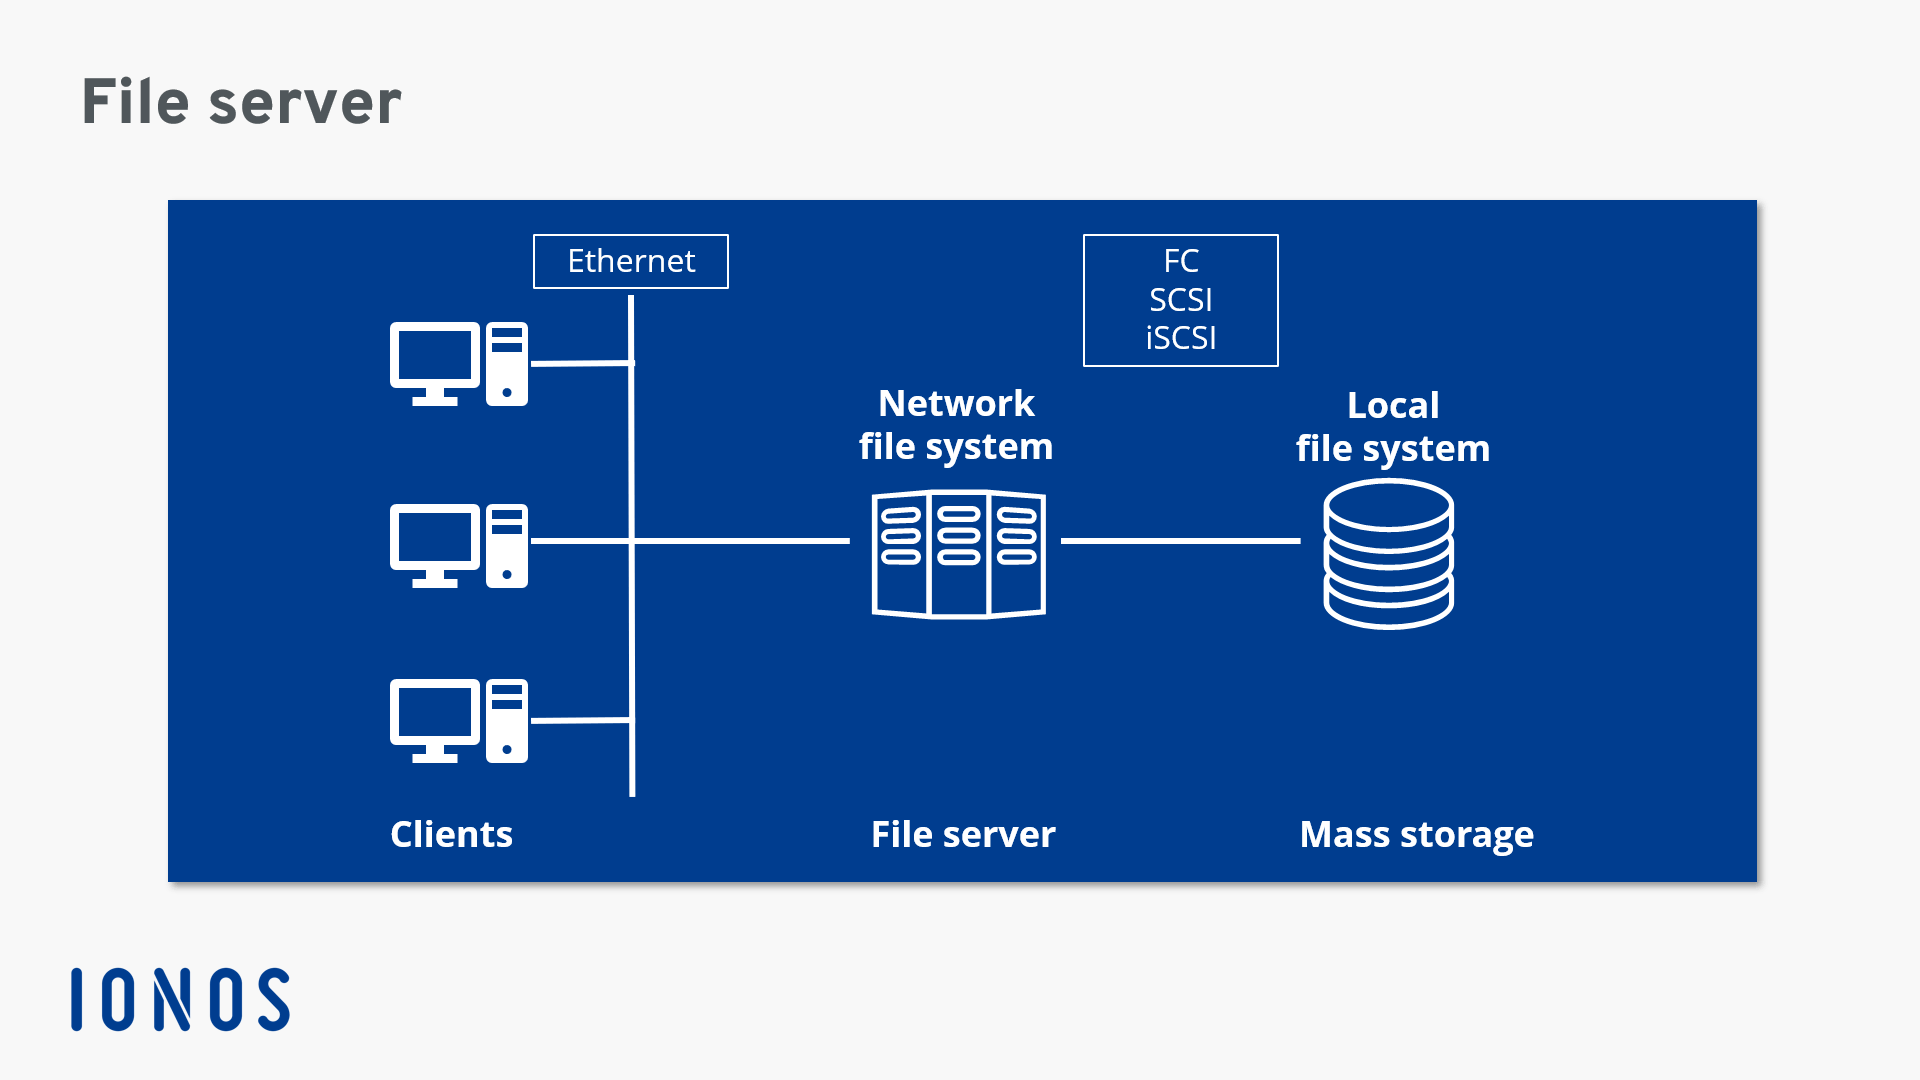 Representación esquemática de la estructura de la red con un file server